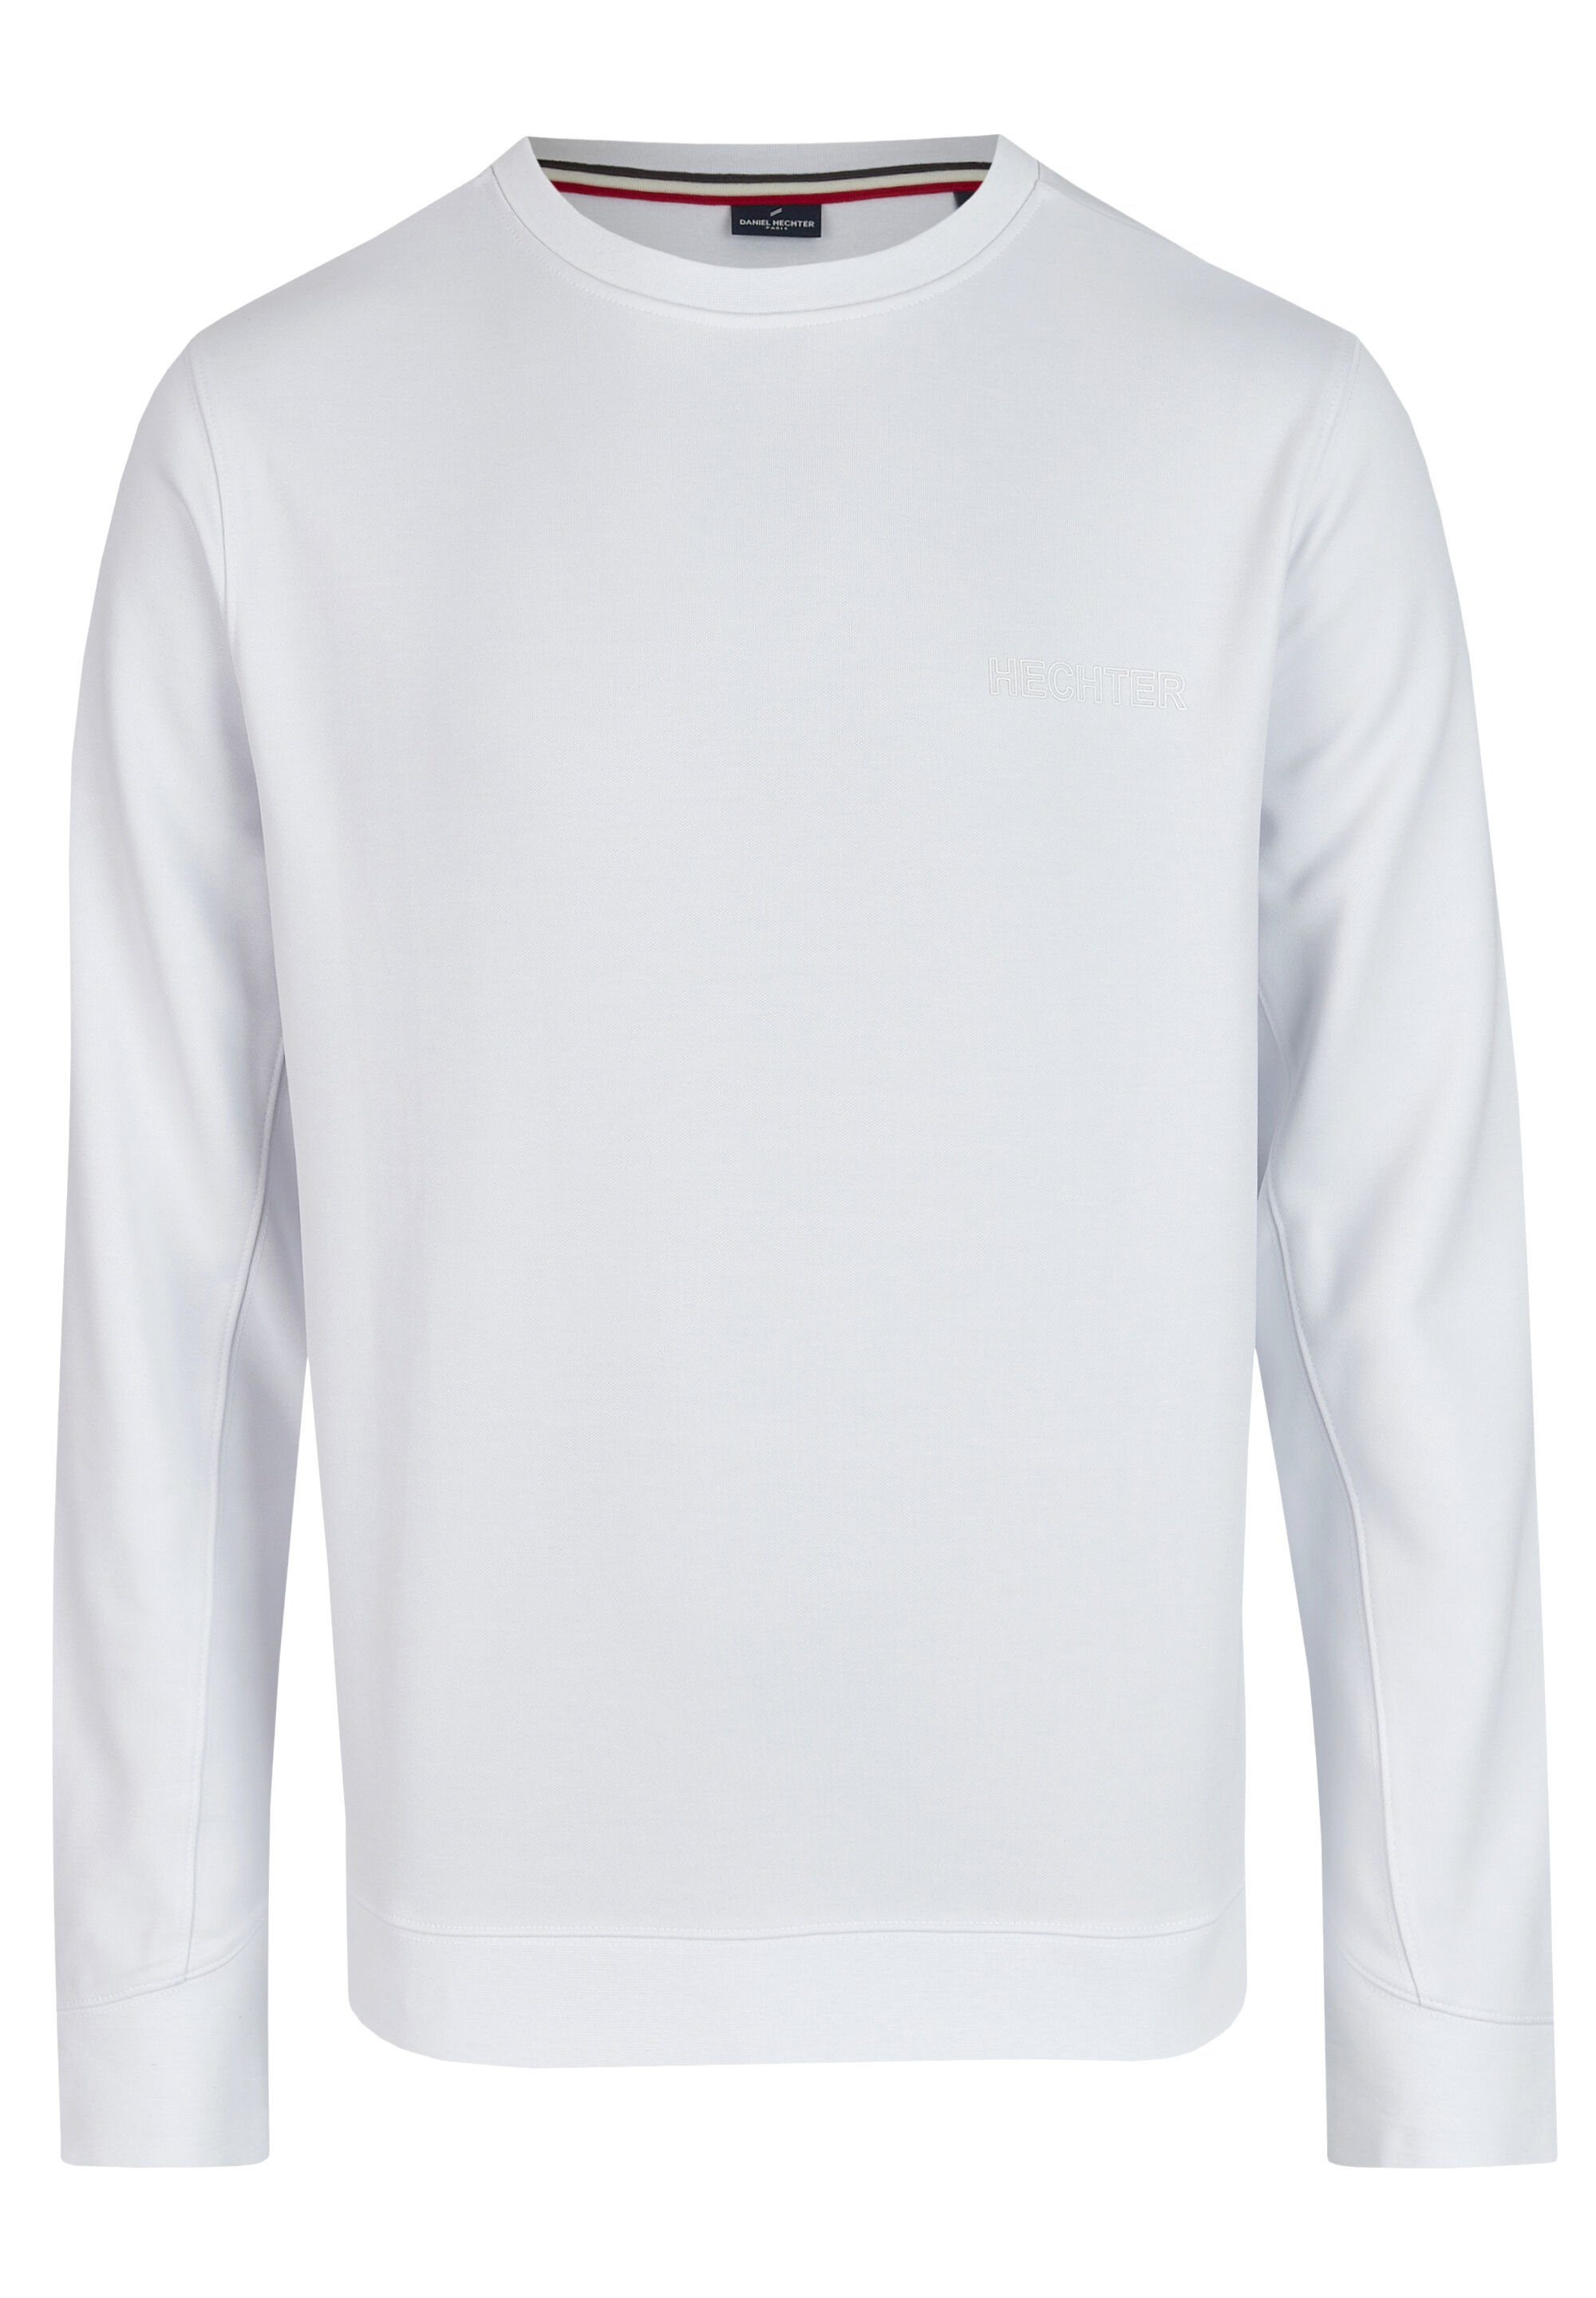 HECHTER PARIS Sweatshirt mit Logo-Print white